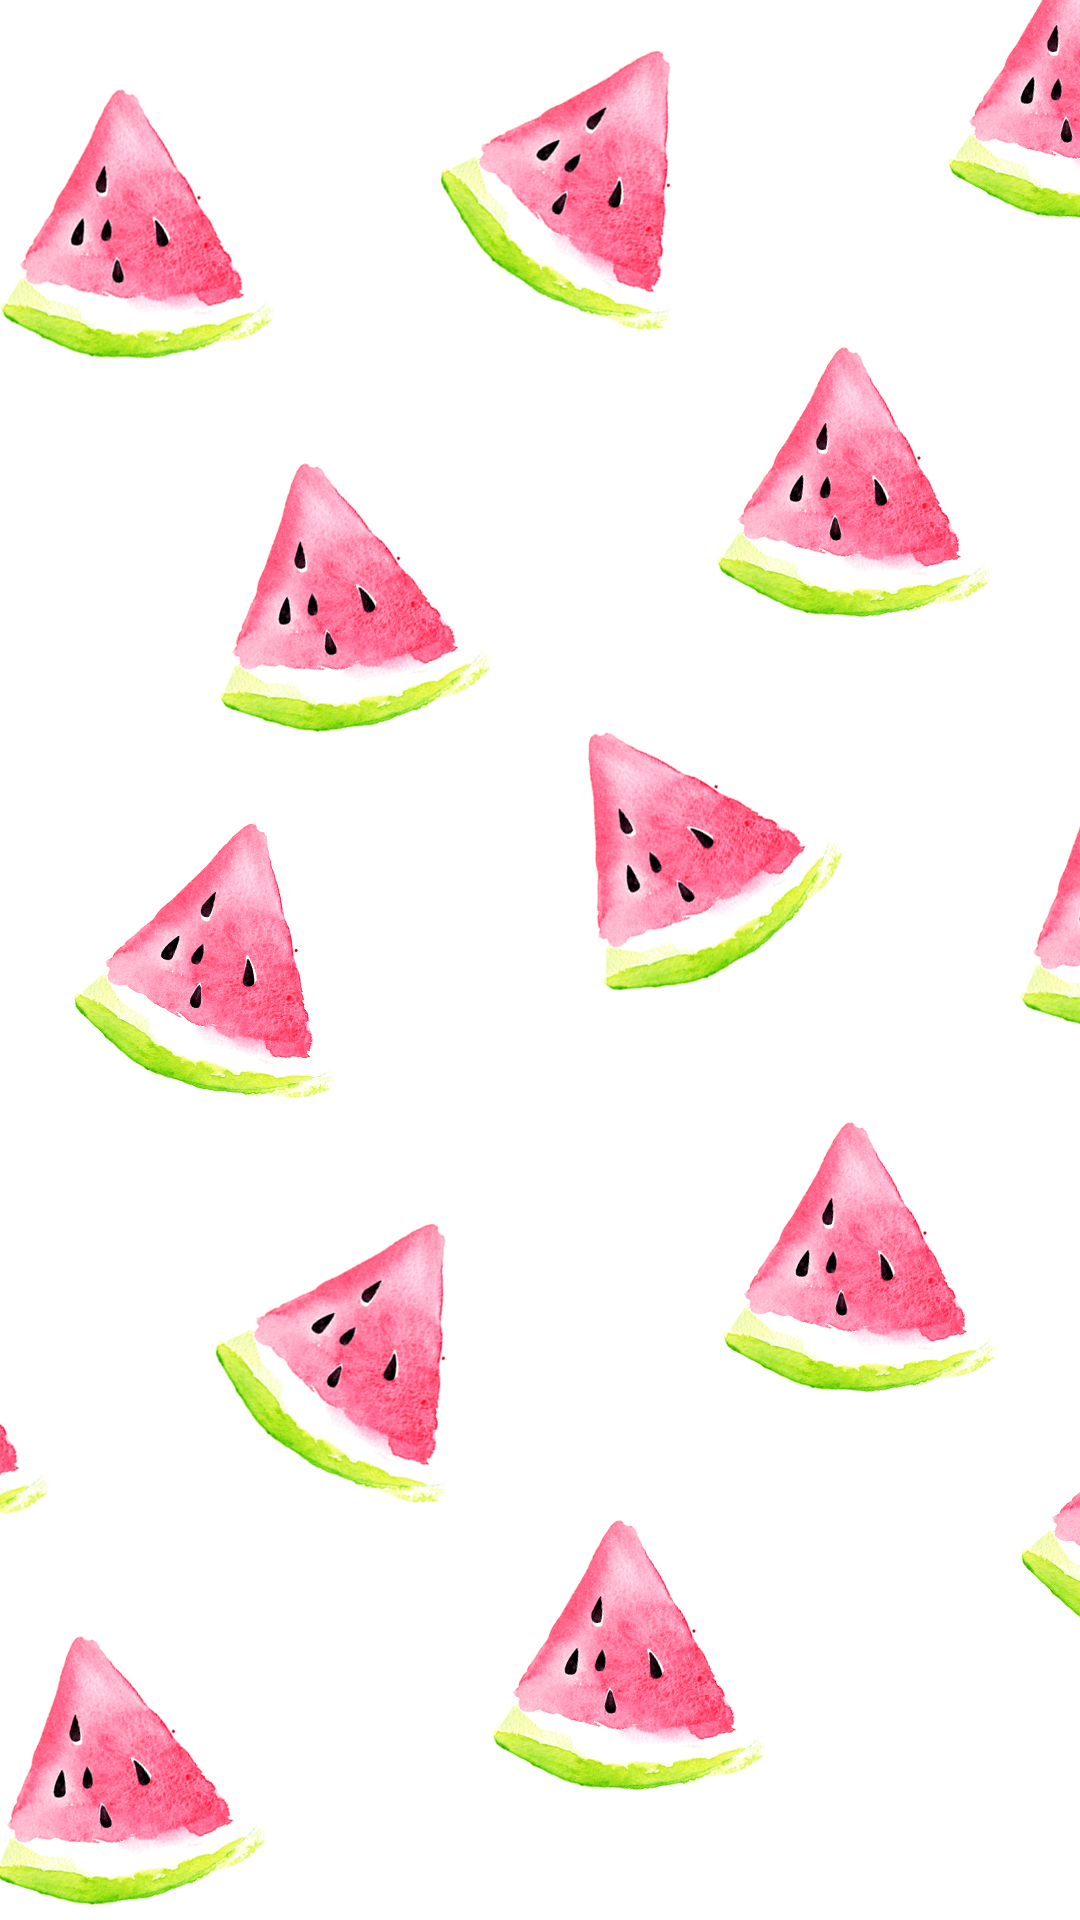 Watermelon Wallpaper Png & Free Watermelon Wallpaper.png